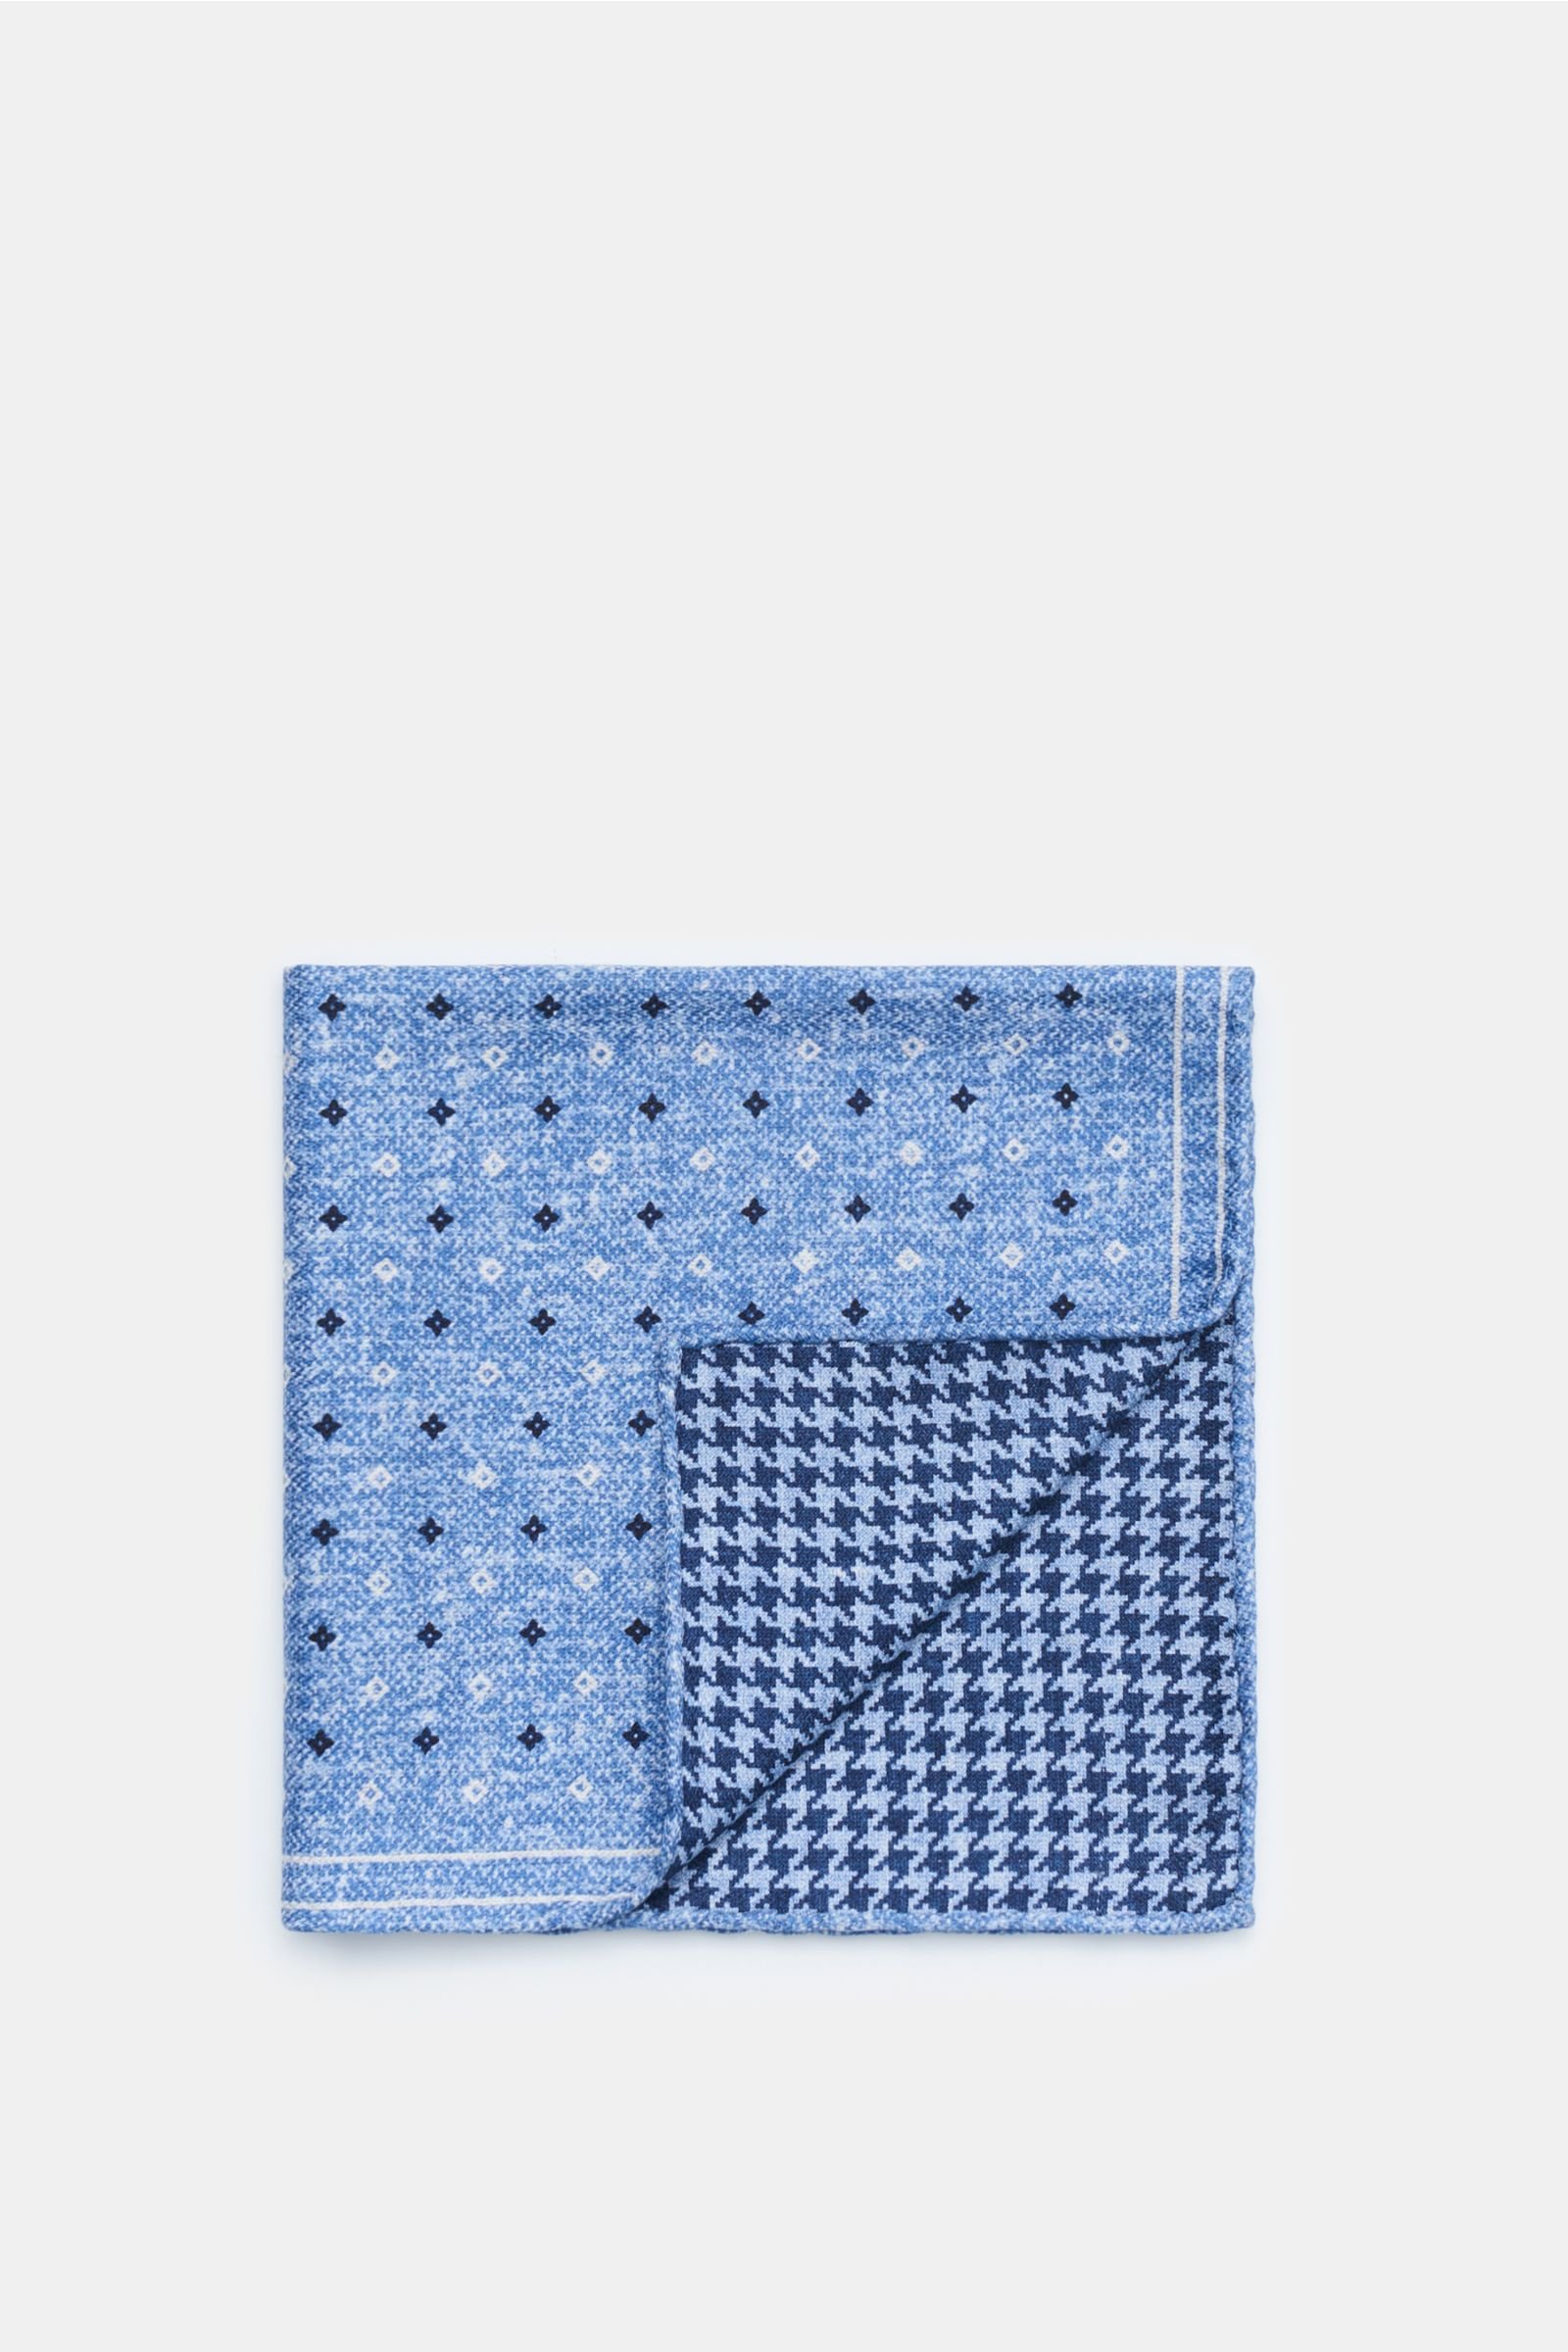 Pocket square smoky blue/navy patterned